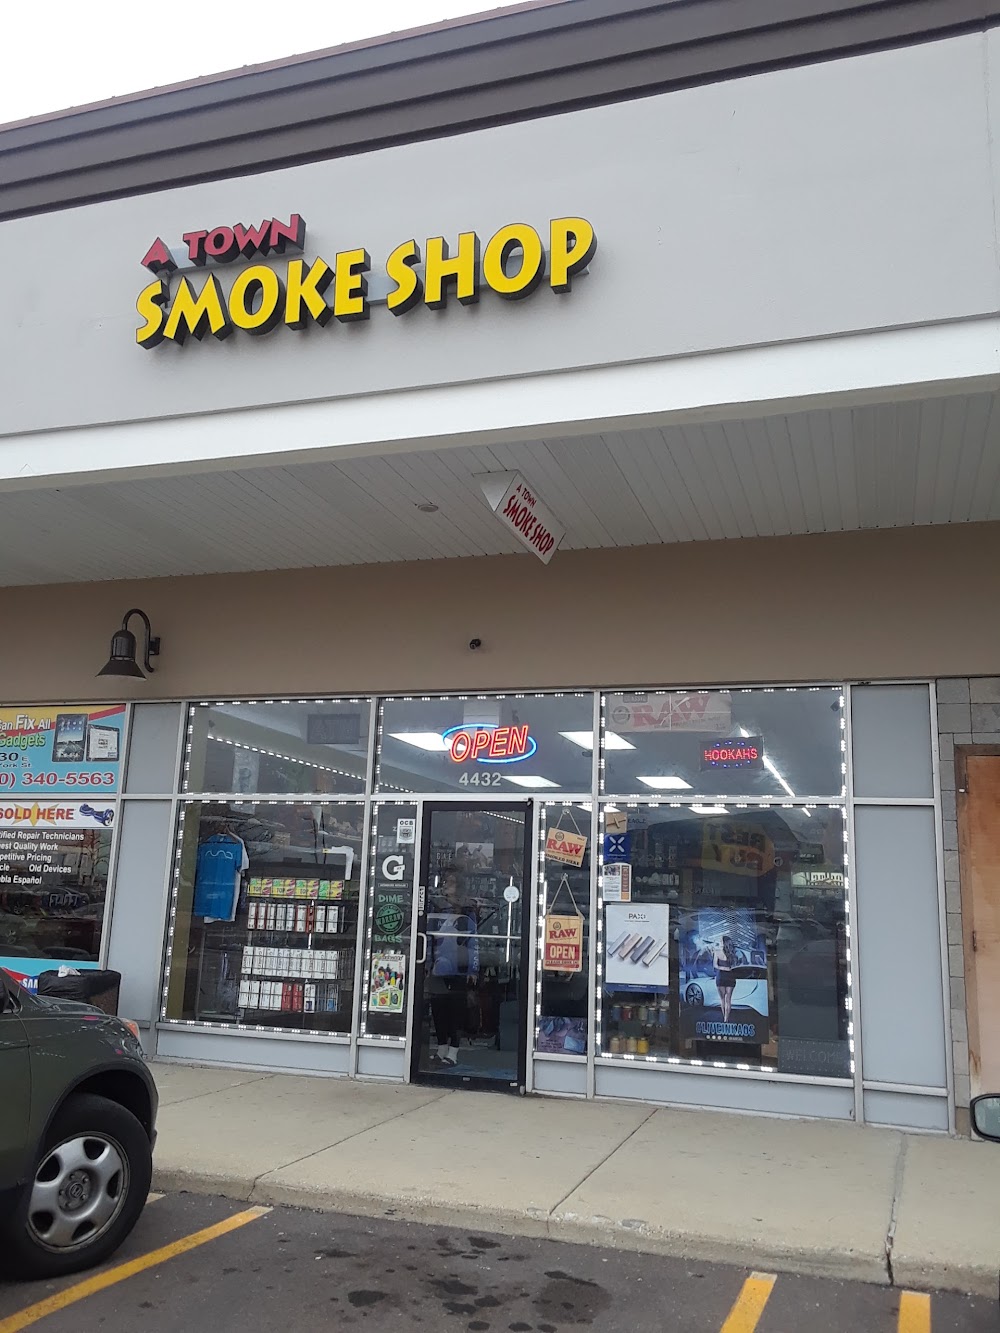 A Town Smoke Shop